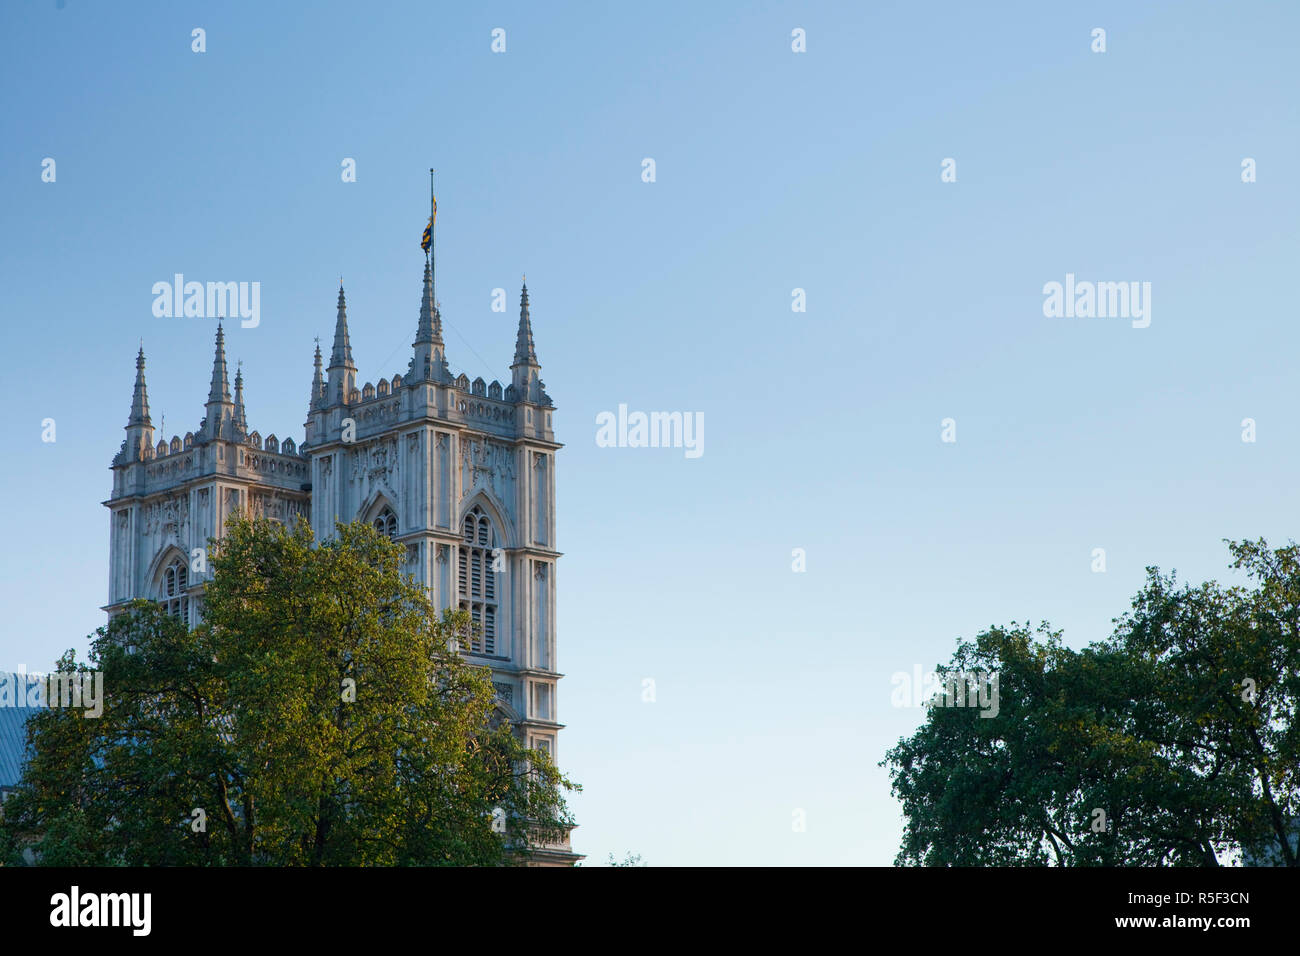 La Abadía de Westminster, Londres, Inglaterra, Reino Unido. Foto de stock